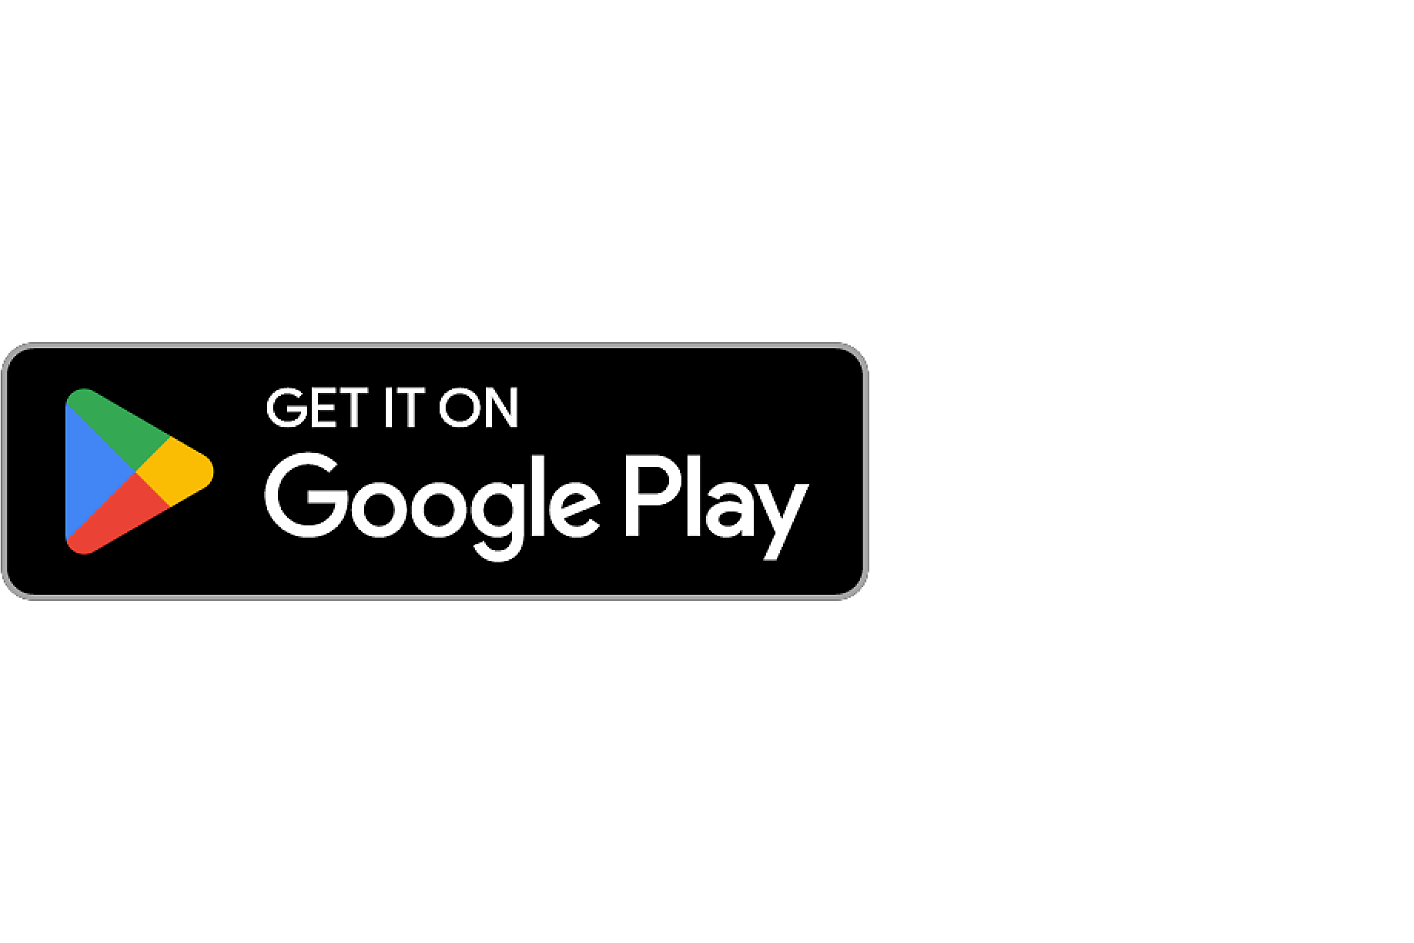 Εικόνα του λογότυπου του Google Play store με το κείμενο "ΛΗΨΗ ΑΠΟ ΤΟ" στο επάνω μέρος